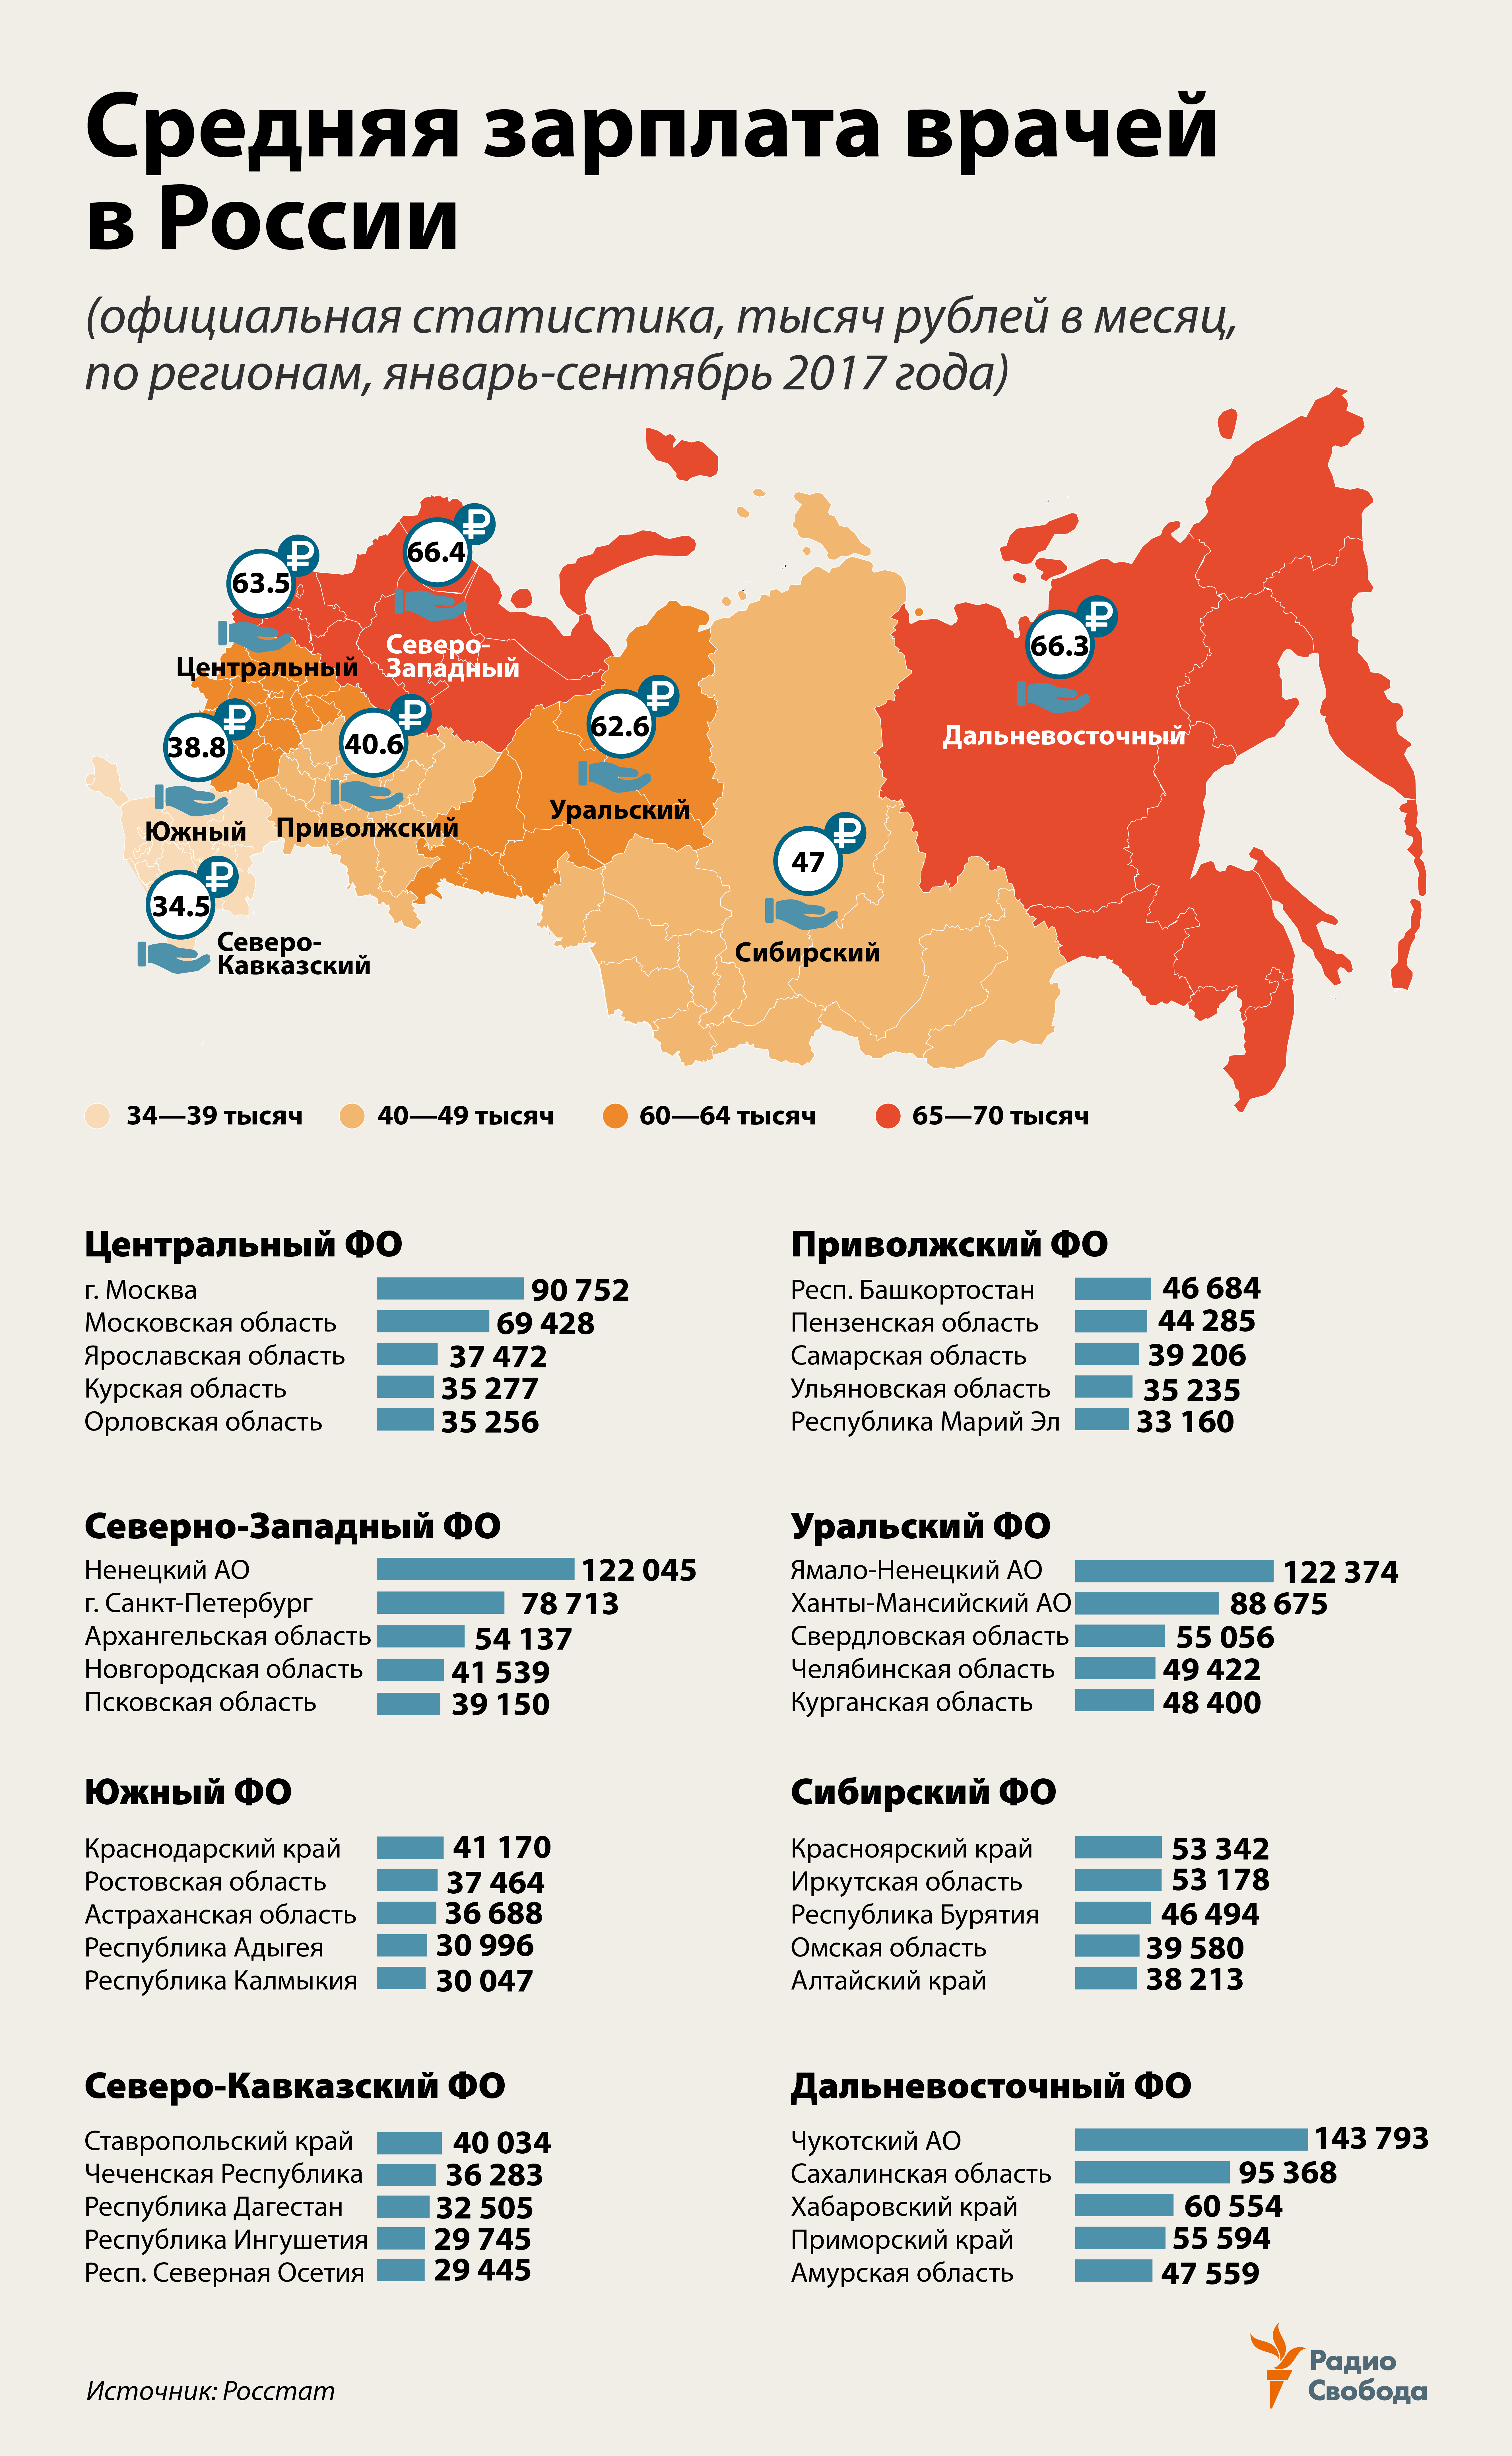 Russia-Factograph-Doctors-Salaries-Doctors-Regions-2017